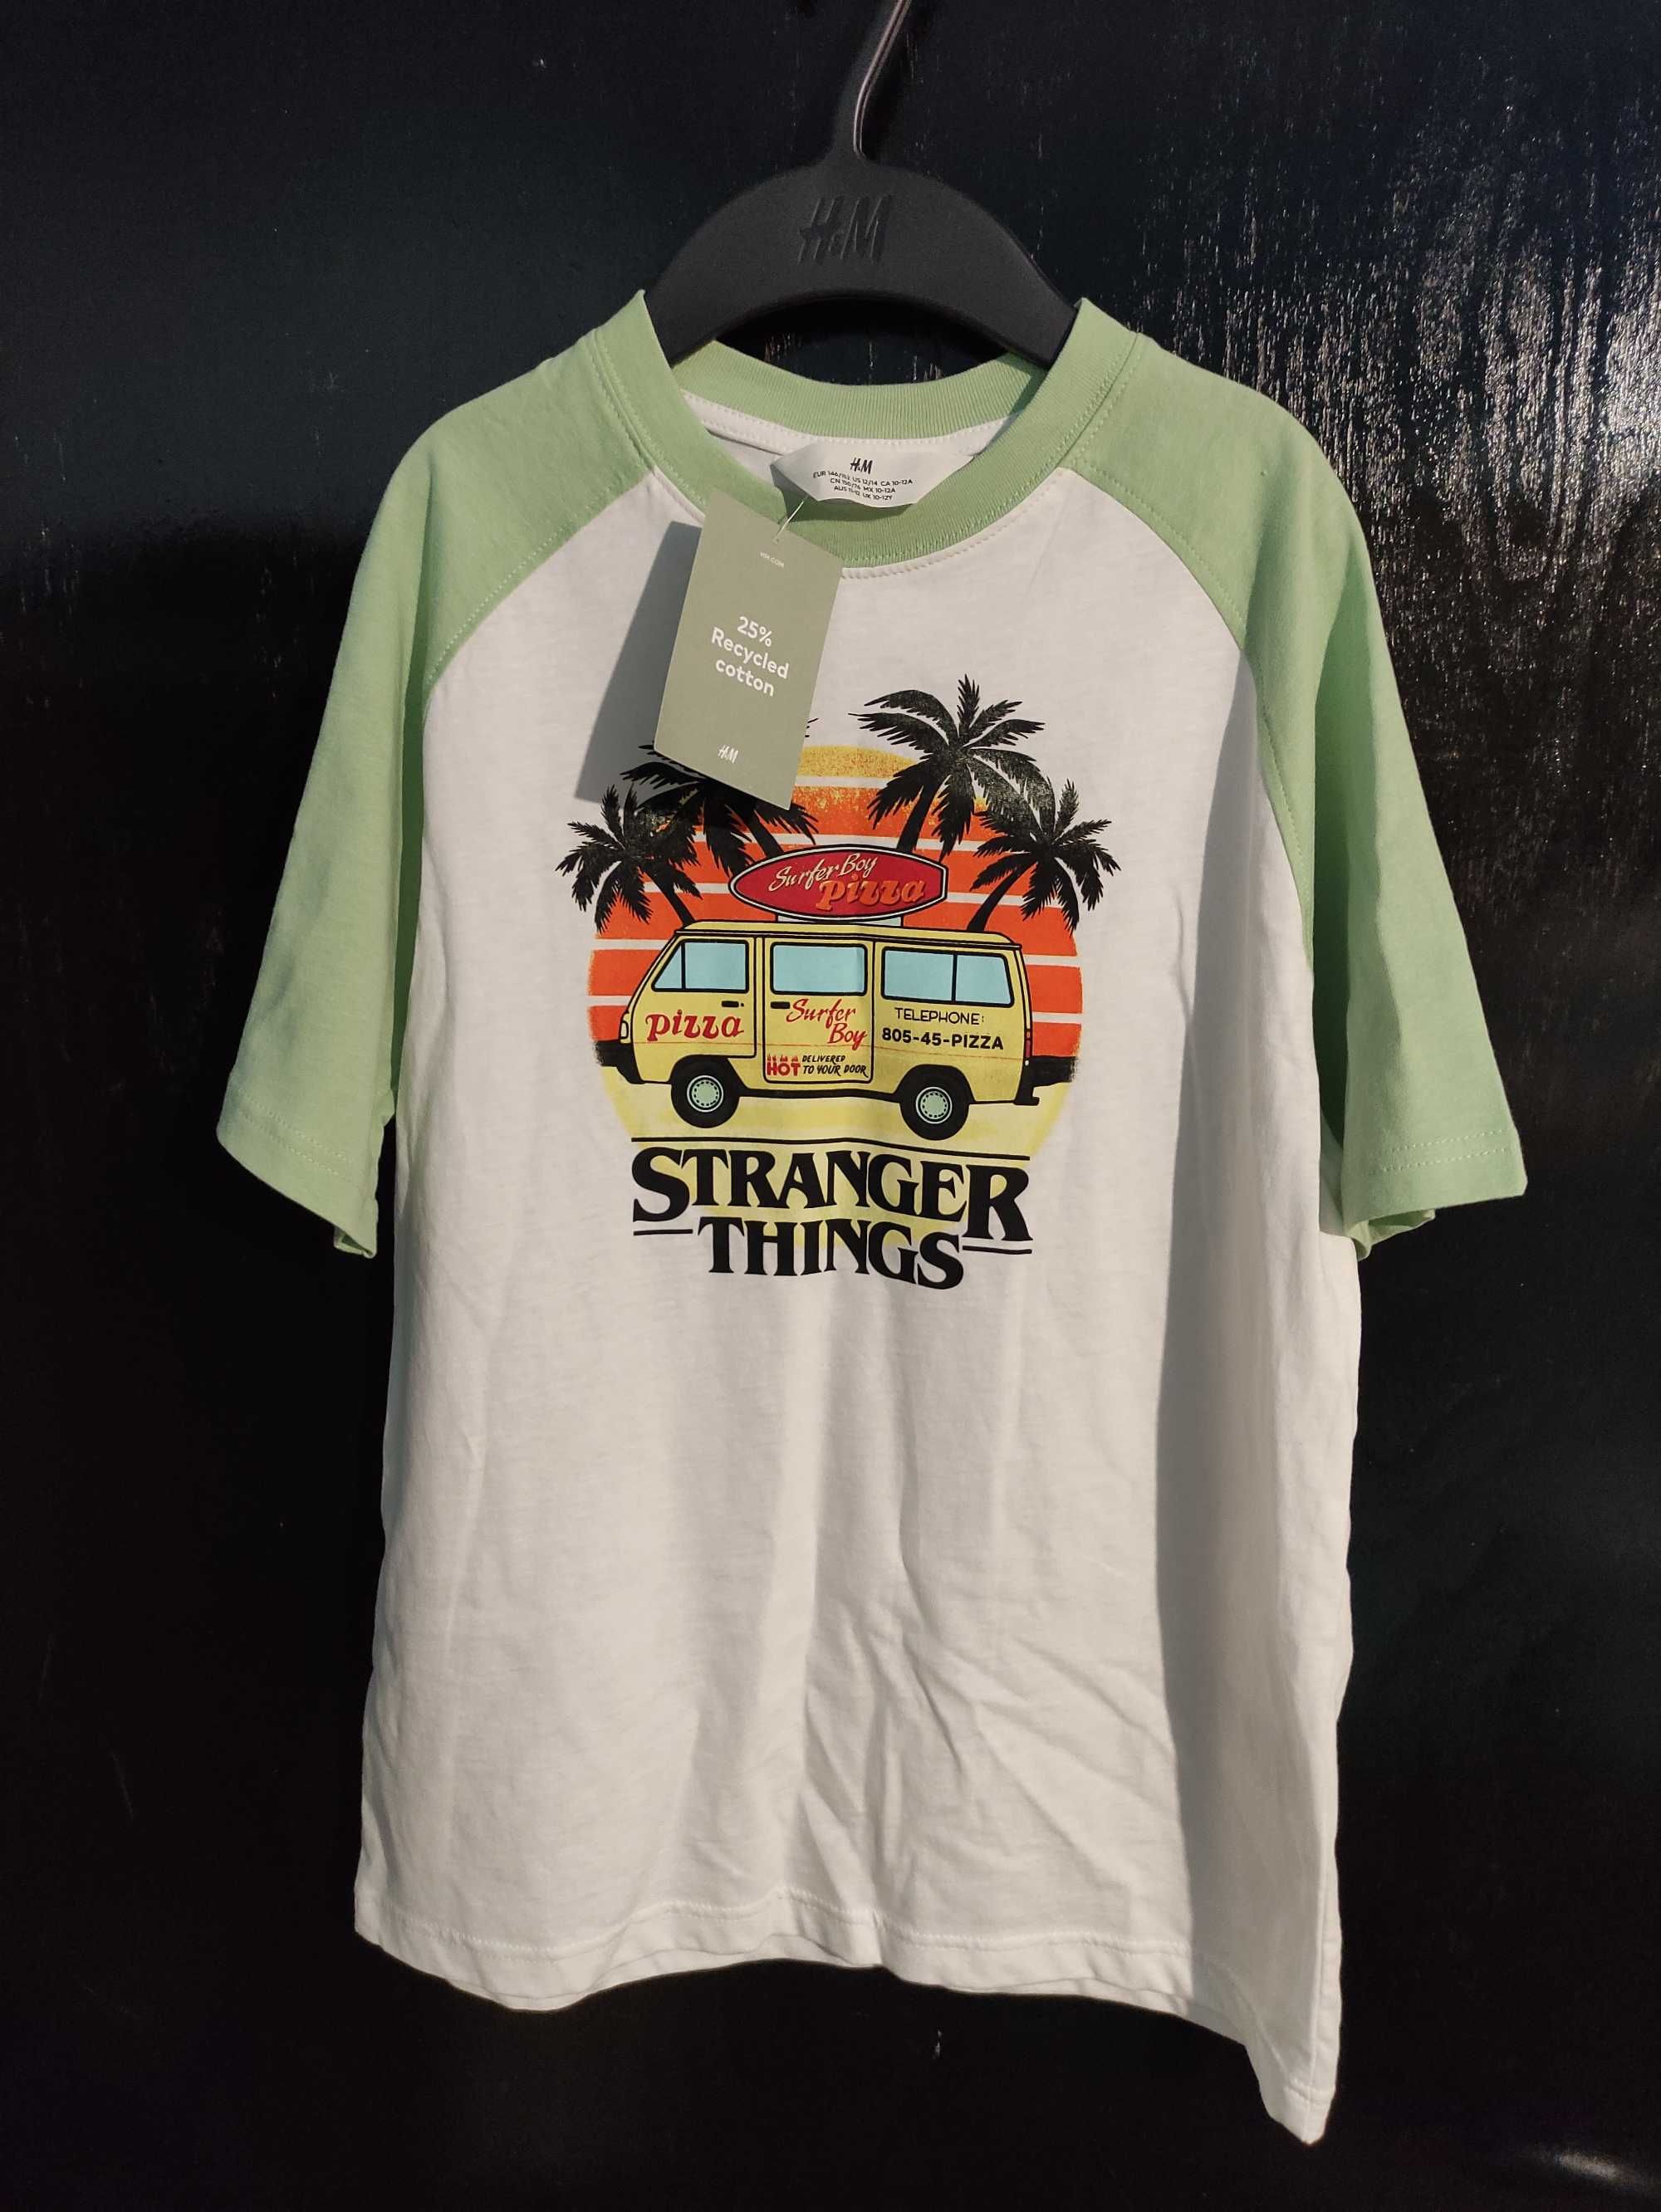 Памучна тениска за тийнейджър H&M / Stranger things, размер 146/152